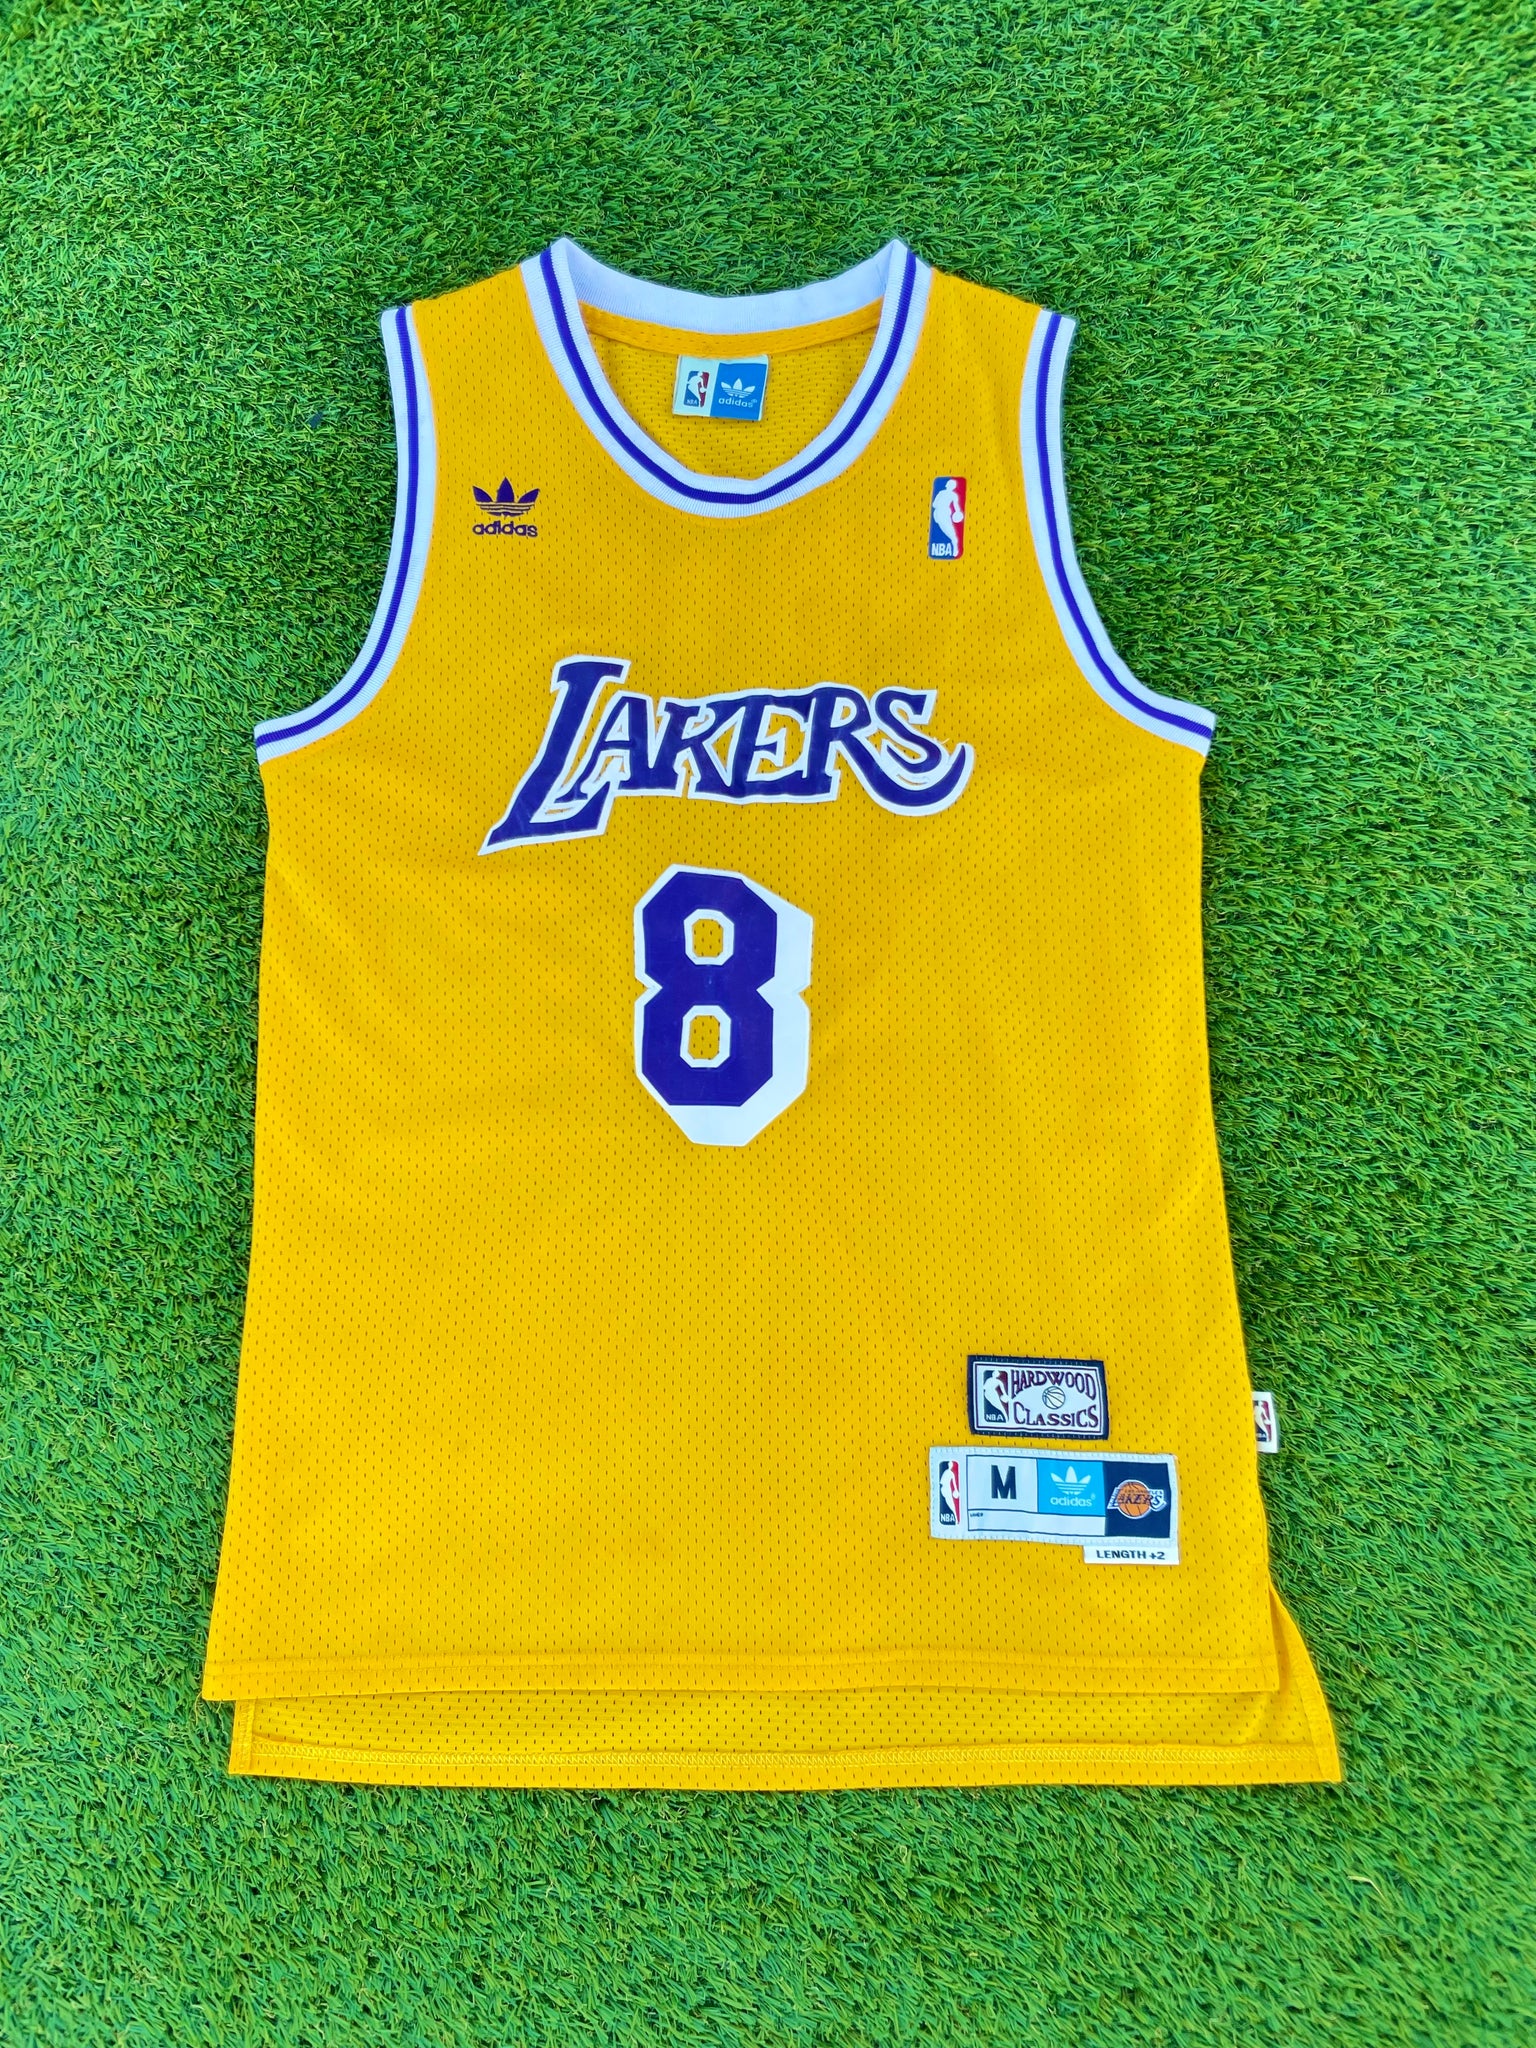 Retro Kobe Bryant Jerseys Available at the NBA Store